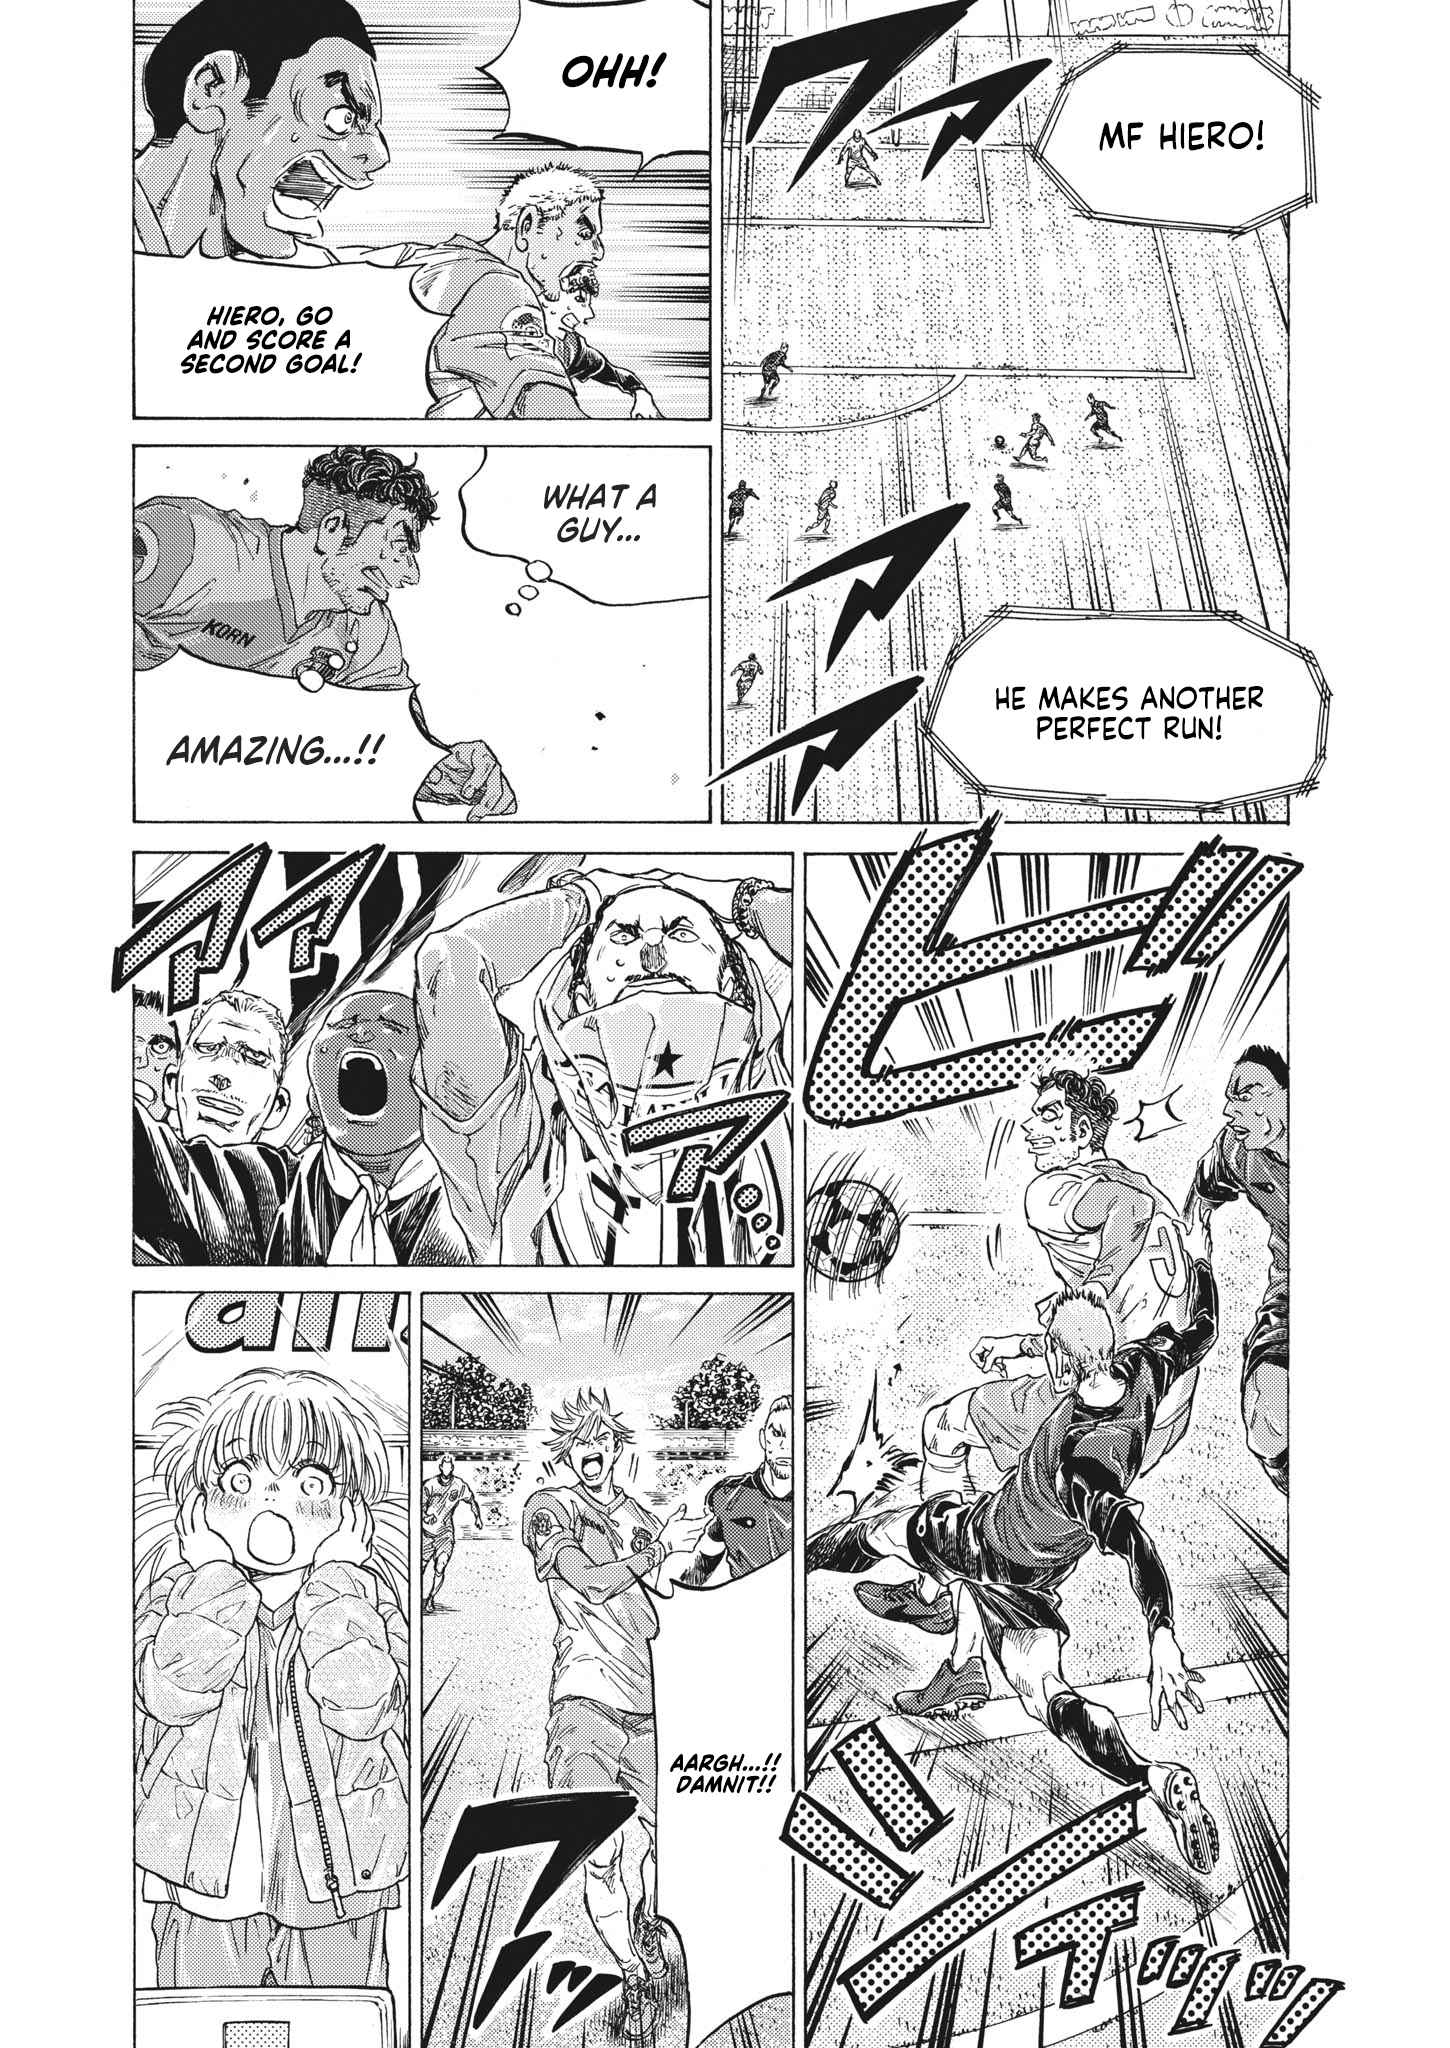 Manga Mogura RE on X: Football manga Ao Ashi vol 30 by Yuugo Kobayashi.  French release by @MangetsuFR Spanish release by @NormaEdManga   / X